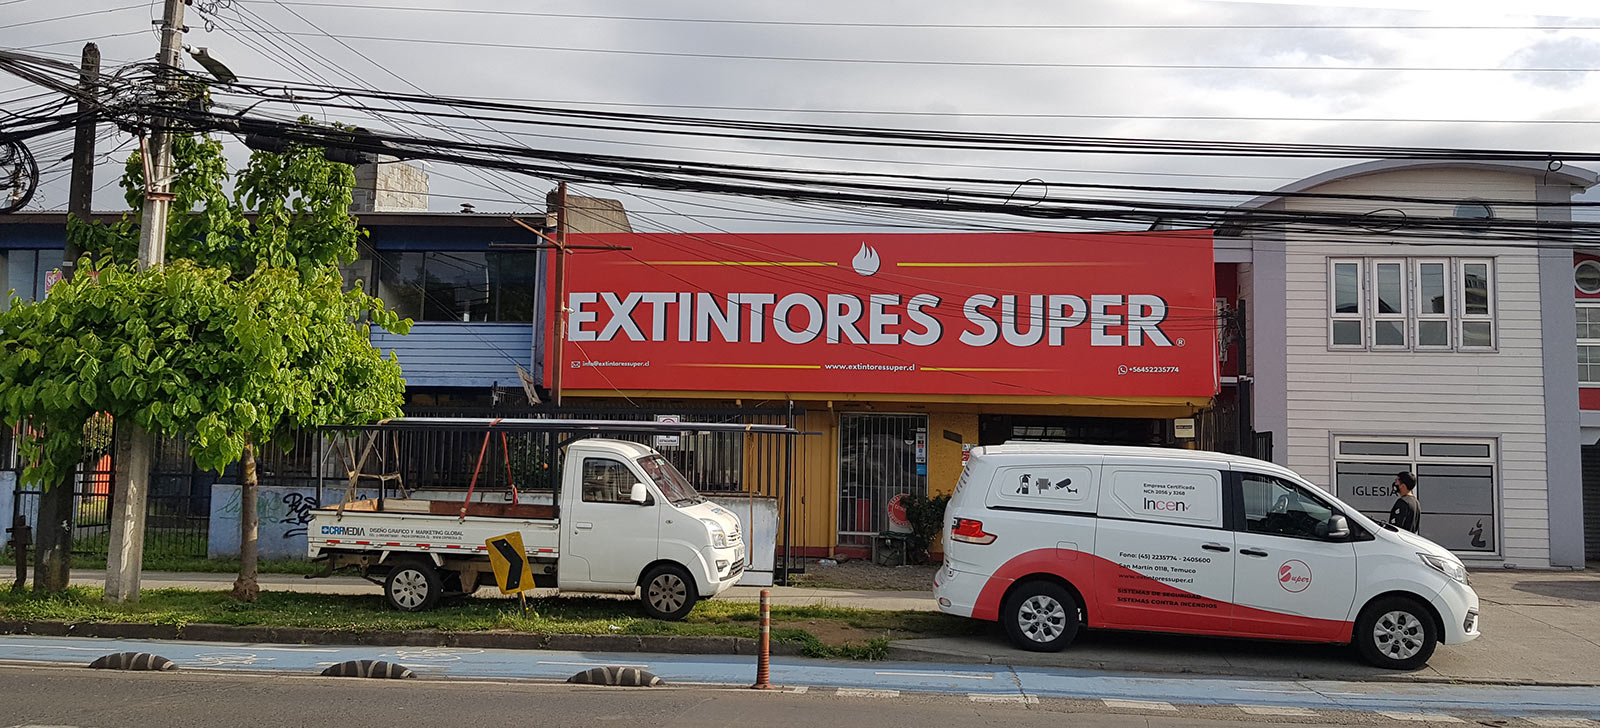 Construcción Marquesinas Extintores Super Temuco